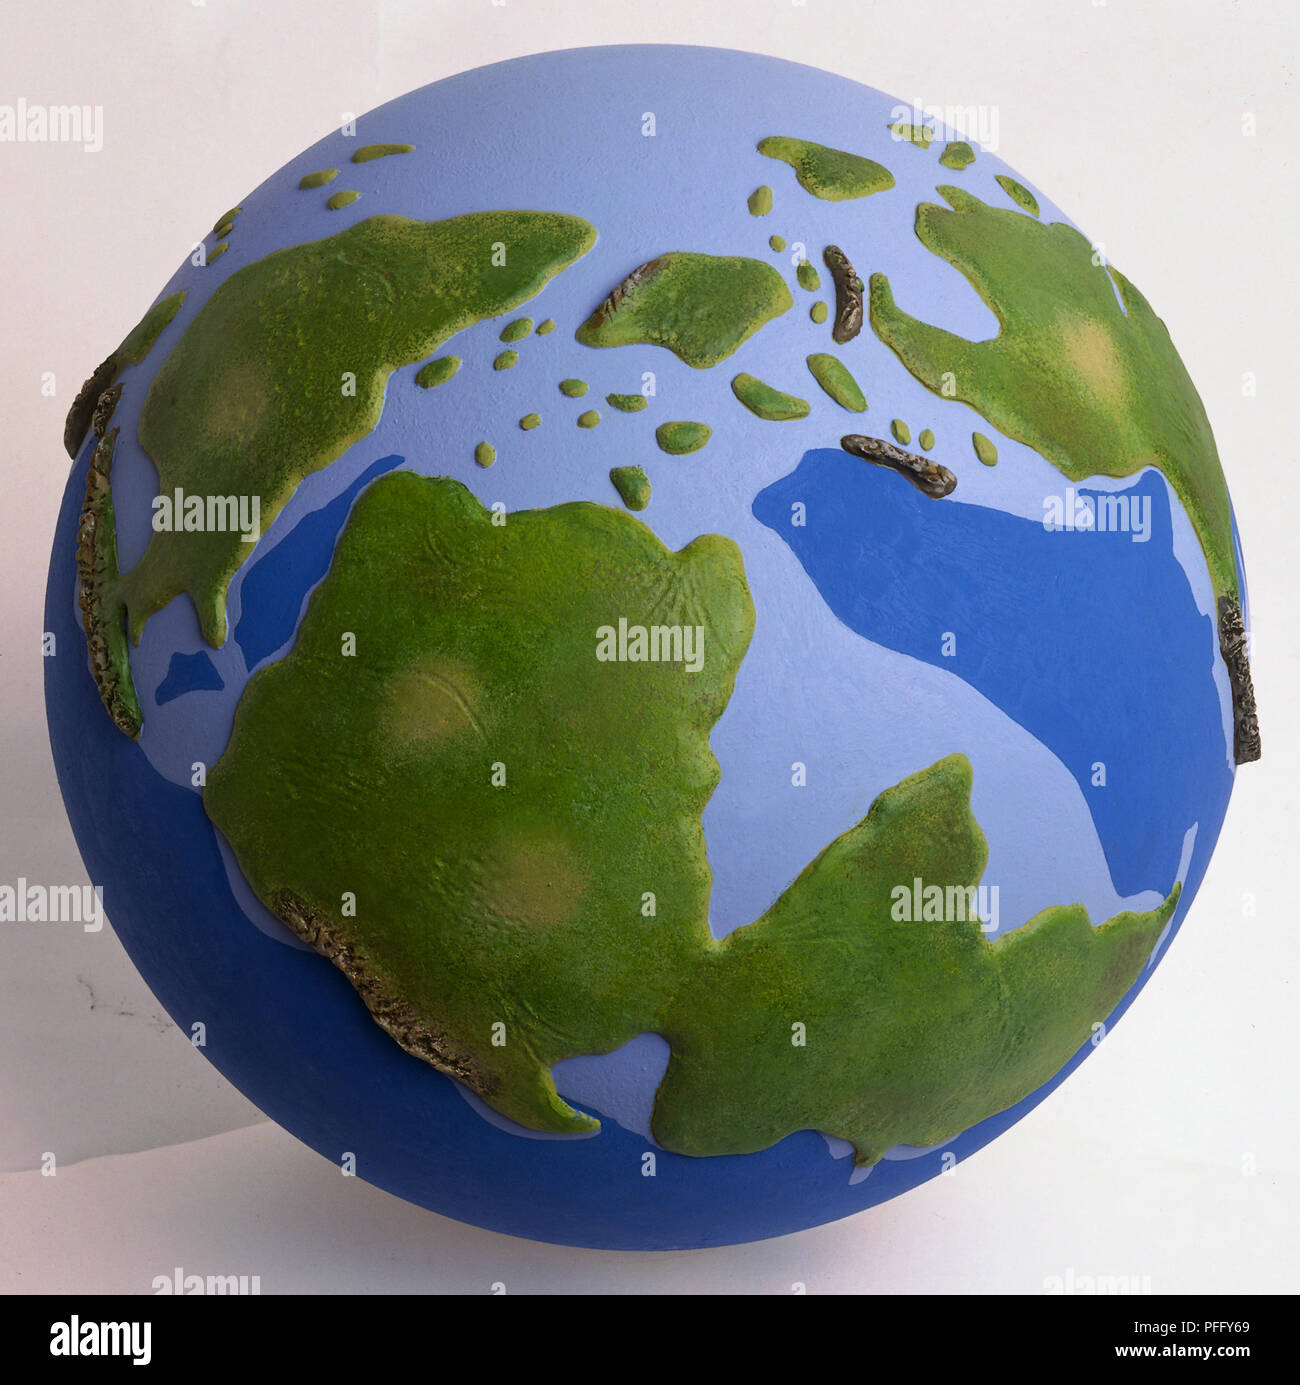 Modelo de la tierra durante el periodo Jurásico antes de los continentes habían tomado el día de hoy las formas y lugares. Pedazos dispersos de América del Norte, América del Sur y África son visibles. Foto de stock